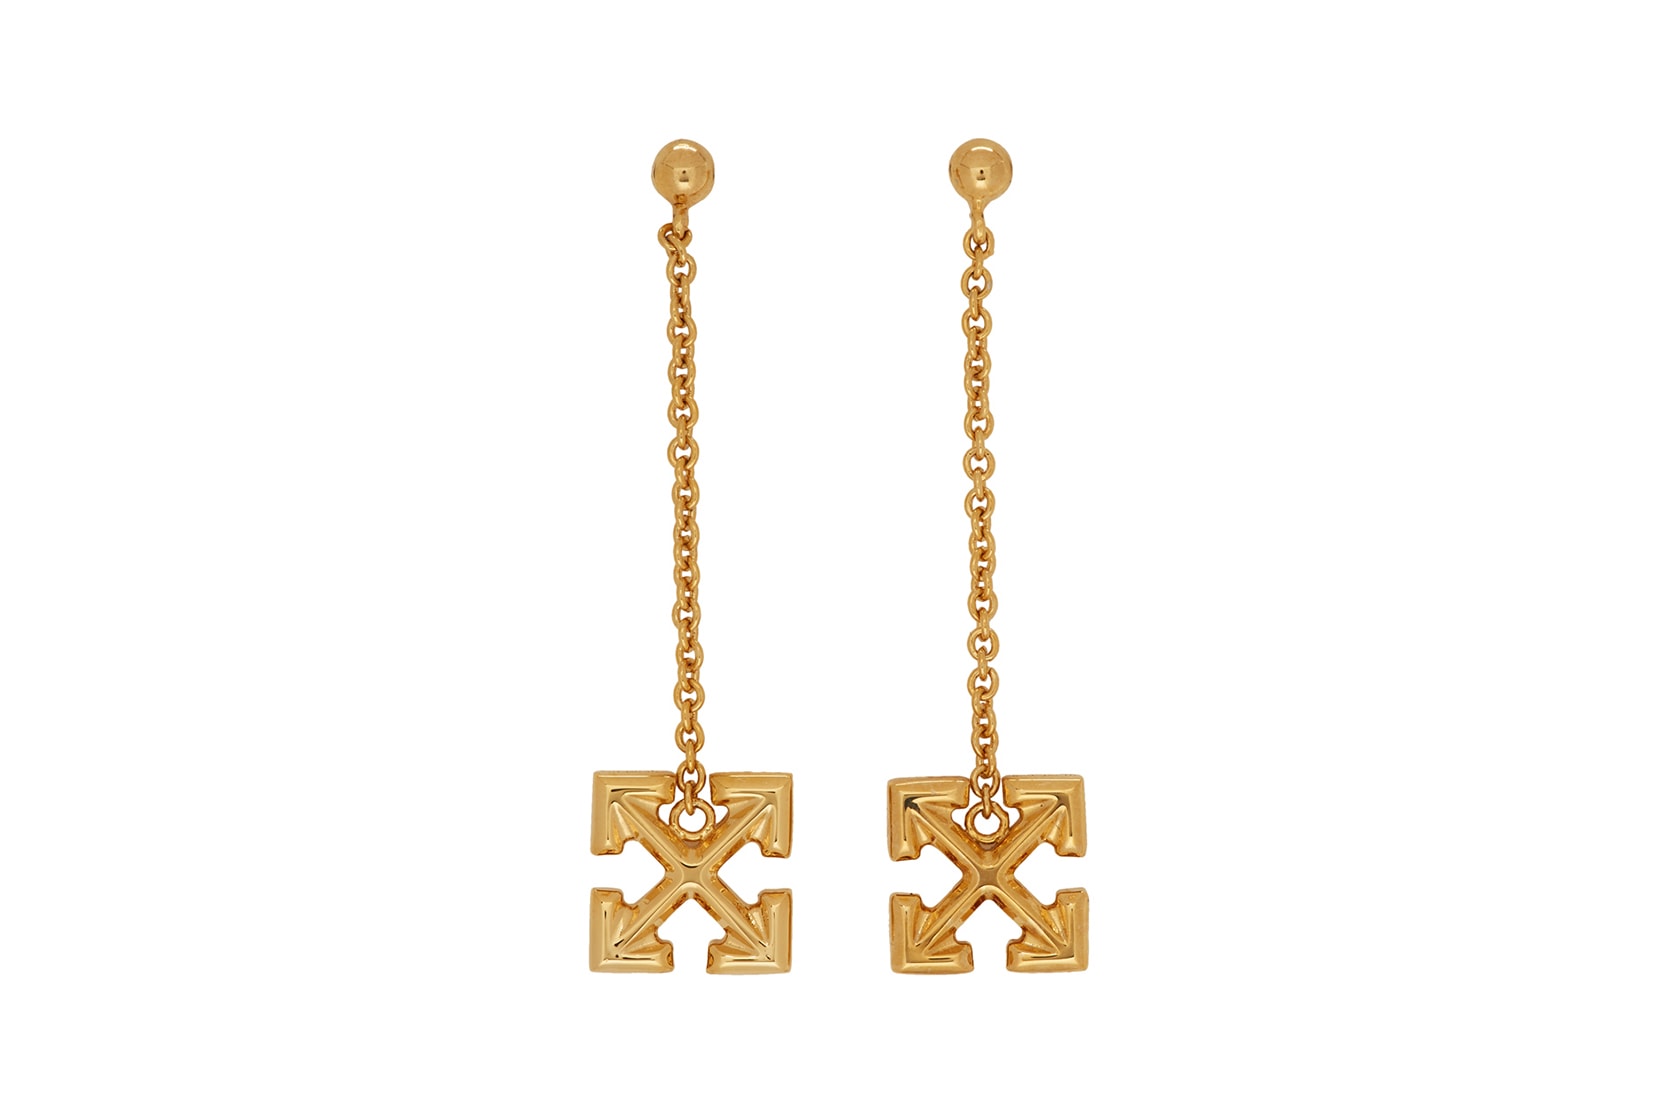 off-white earrings jewelry arrow gold